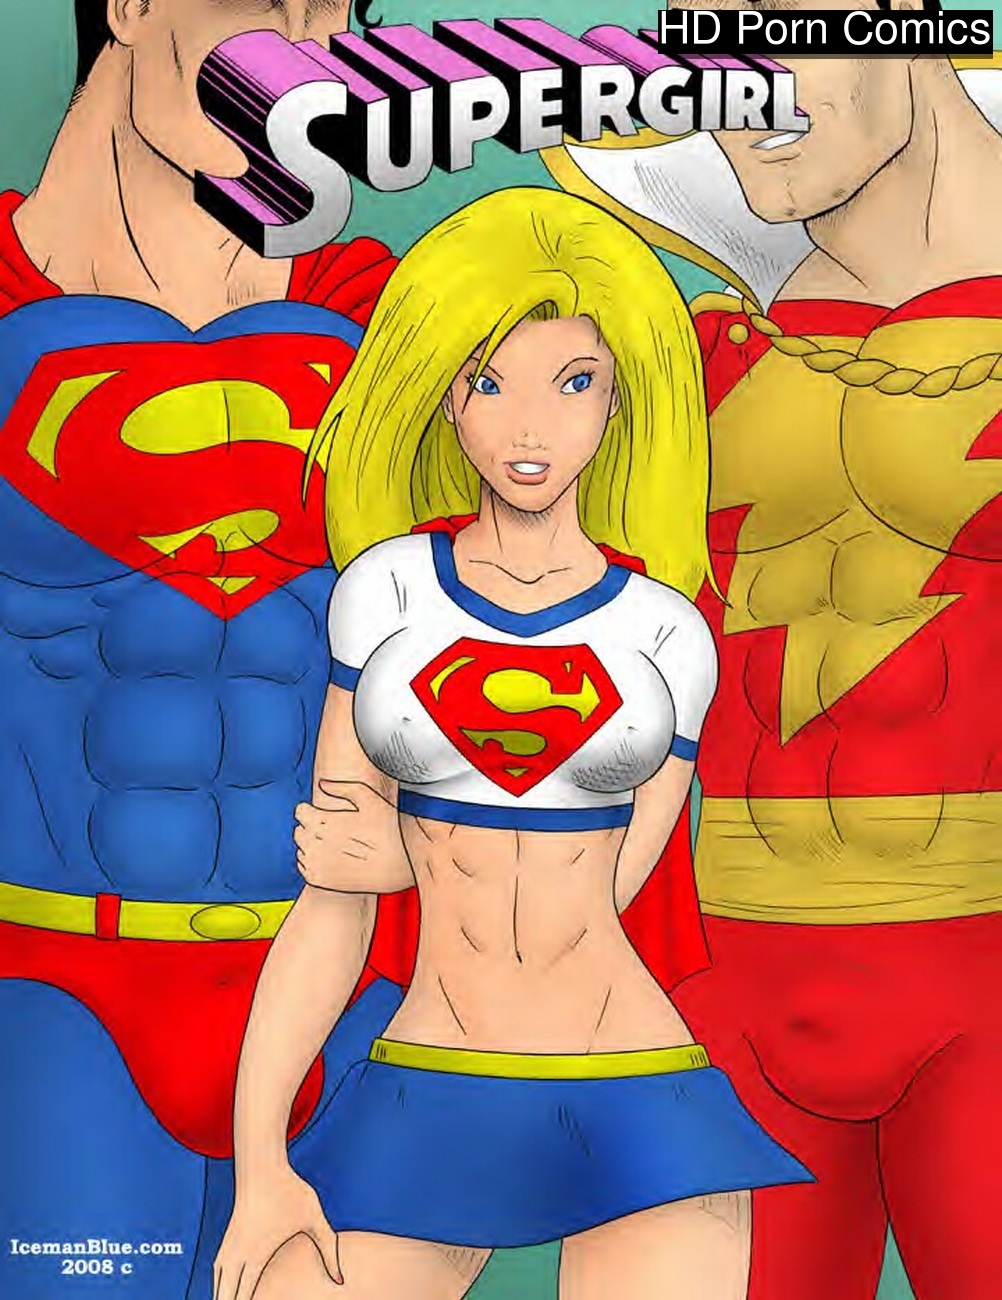 Supergirl Cartoon Blowjob Porn - Supergirl 1 comic porn - HD Porn Comics